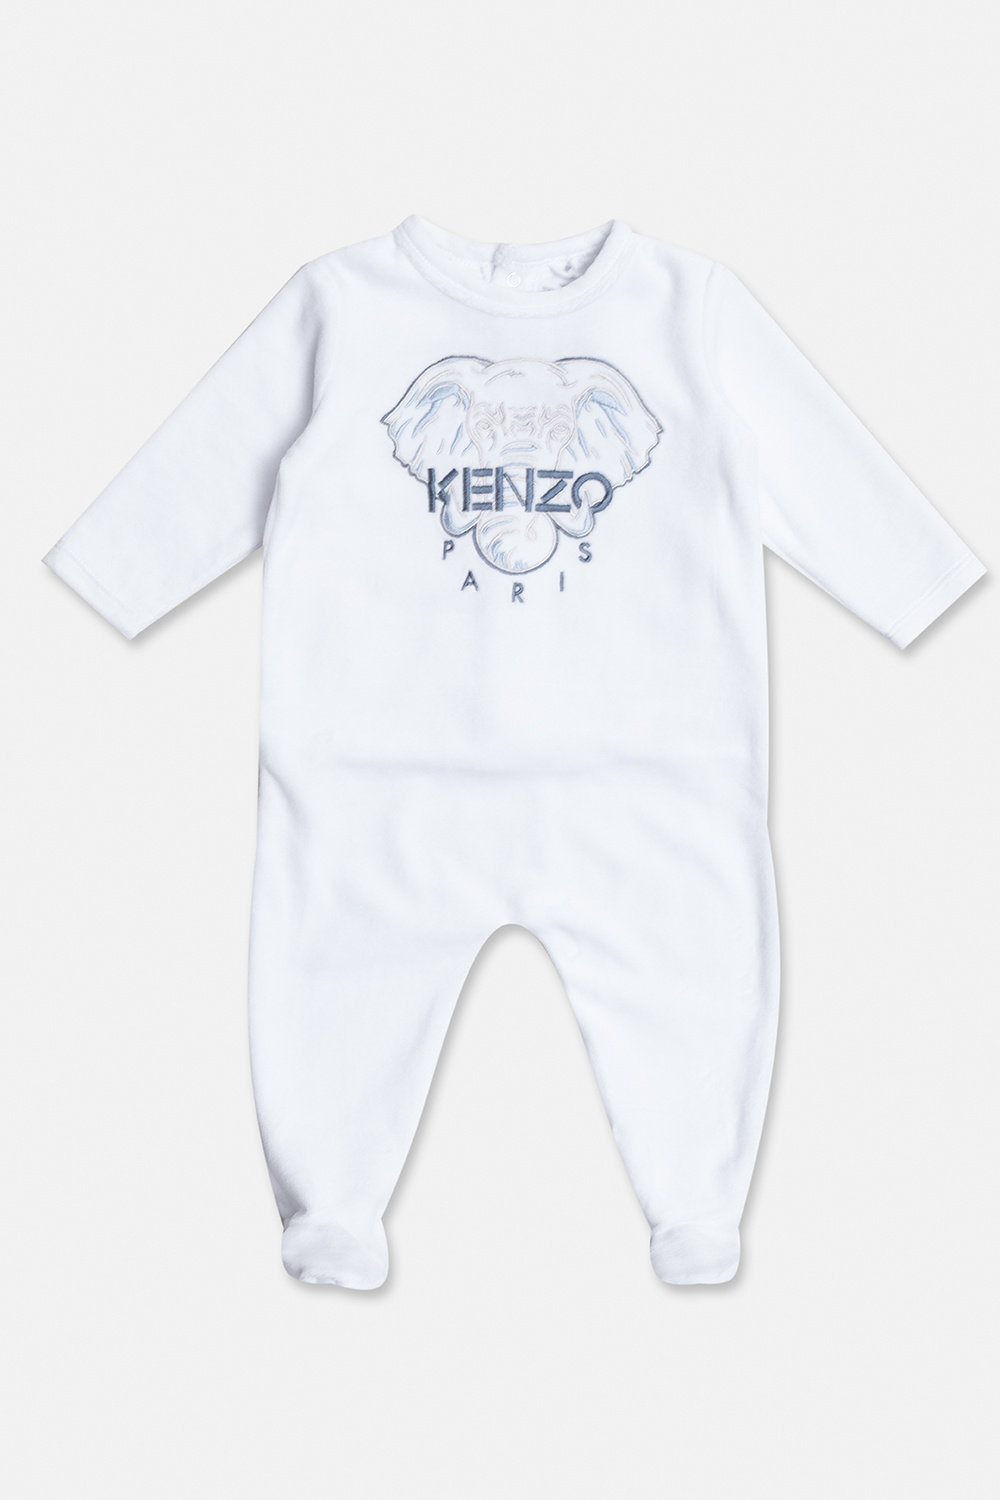 White One-piece pyjama Kenzo Kids - Vitkac Canada